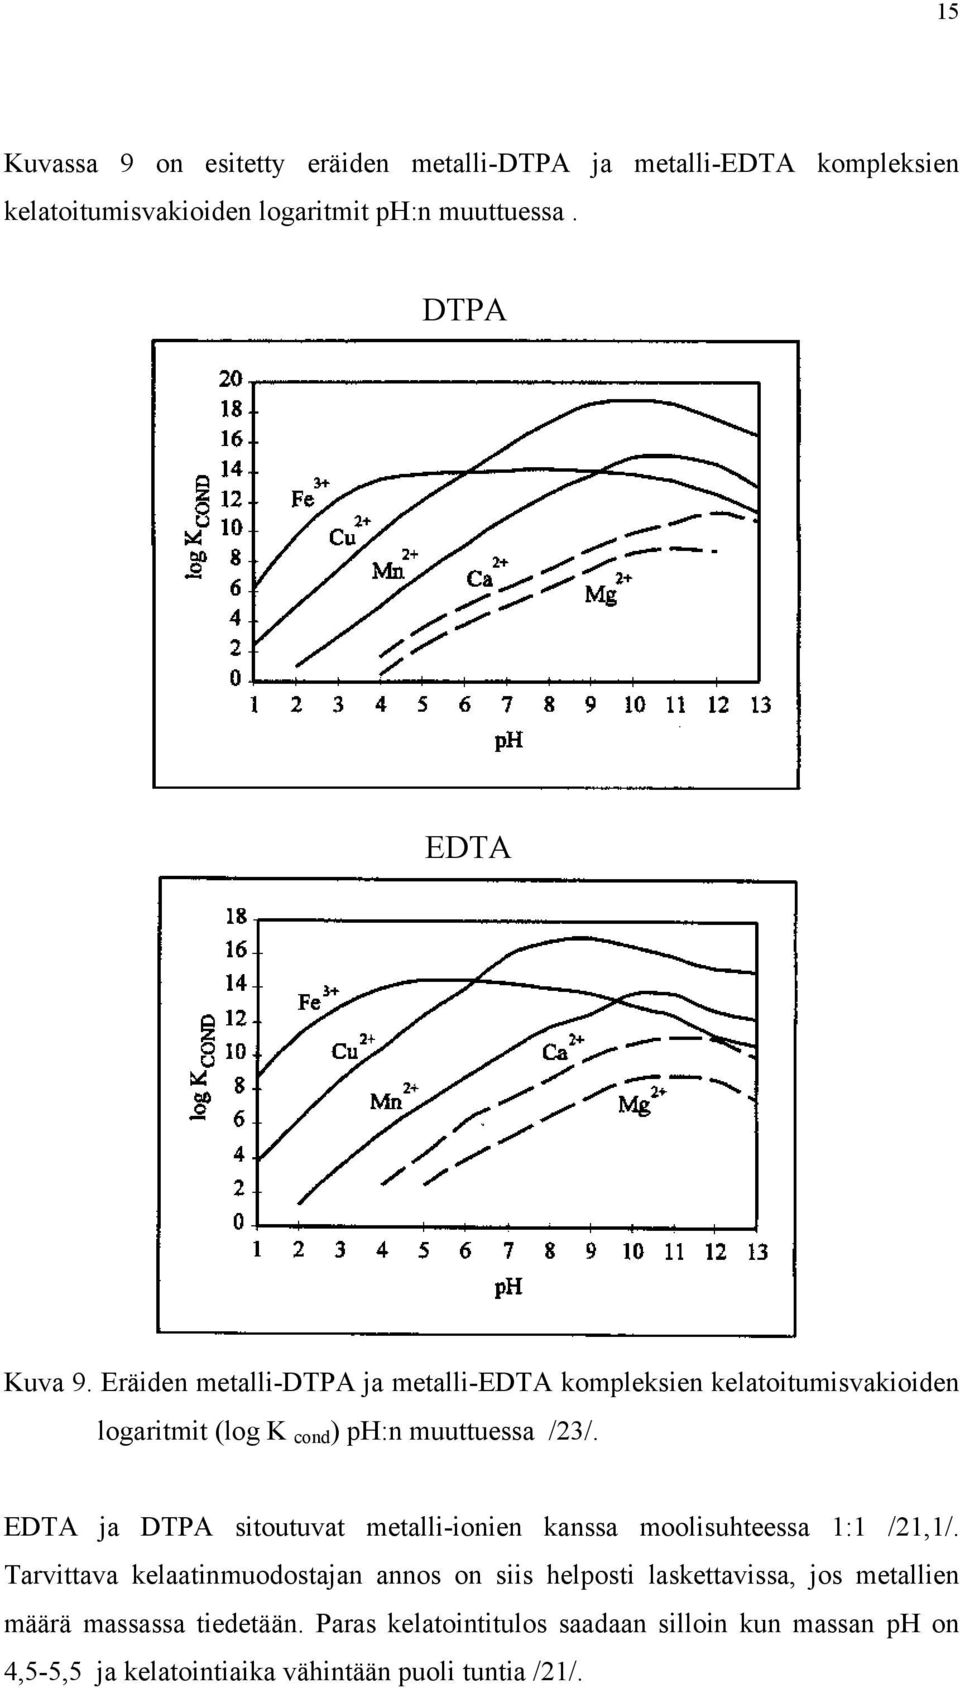 EDTA ja DTPA sitoutuvat metalli-ionien kanssa moolisuhteessa 1:1 /21,1/.